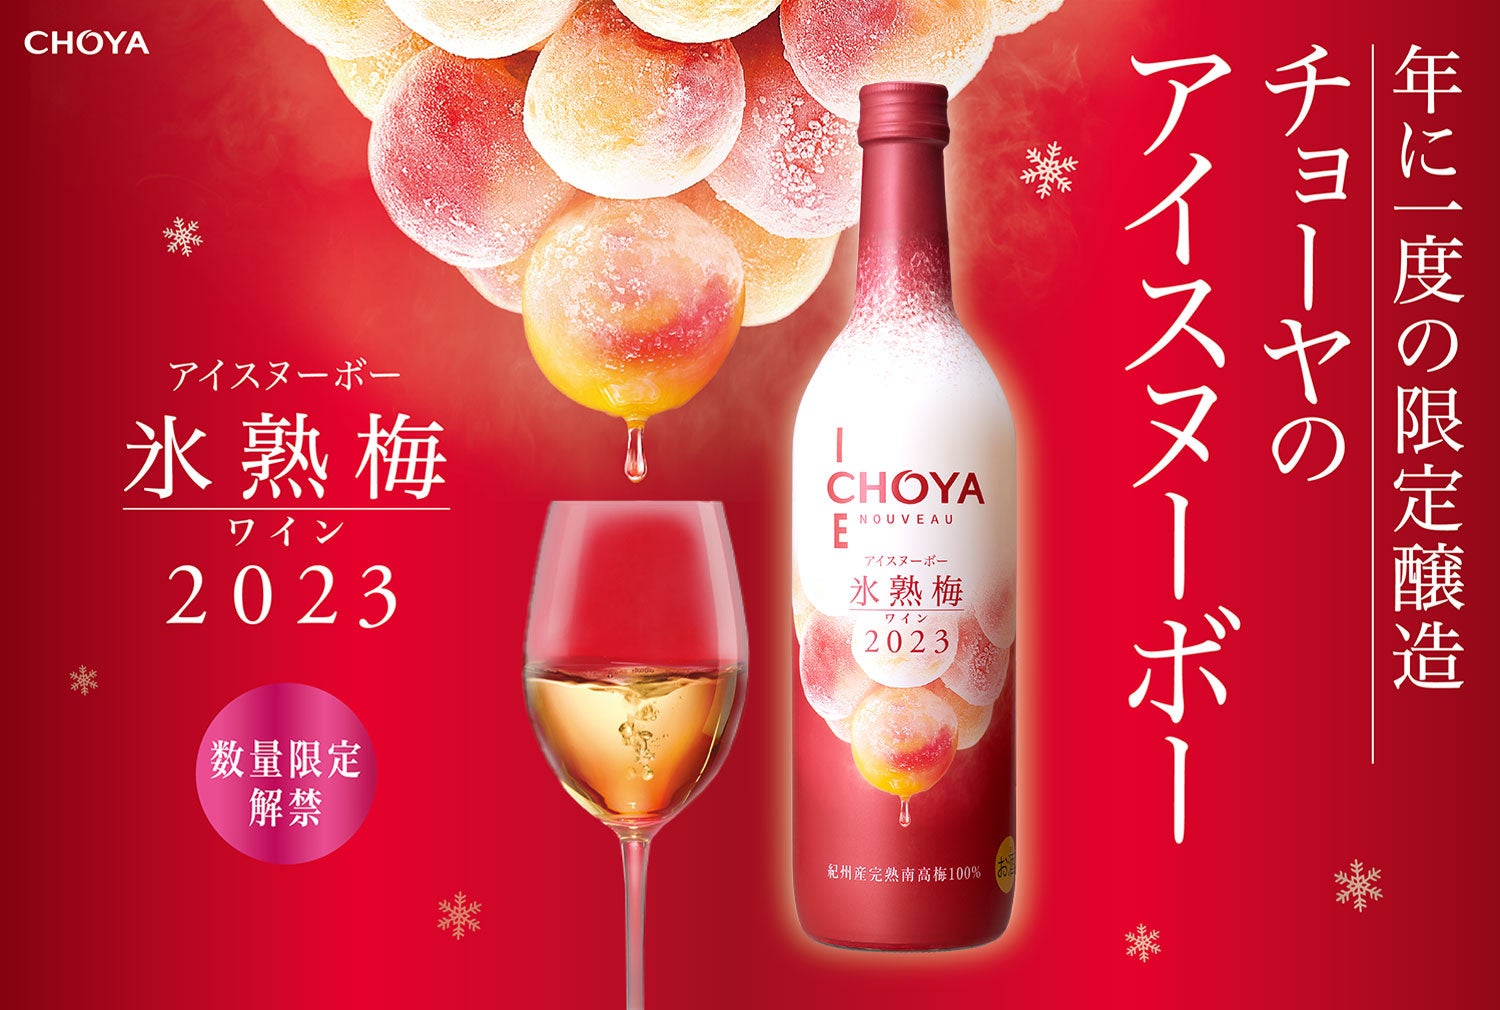 2023年収穫の梅だけで造ったプレミアムな梅ワイン「CHOYA ICE NOUVEAU 氷熟梅ワイン2023」のサブ画像1